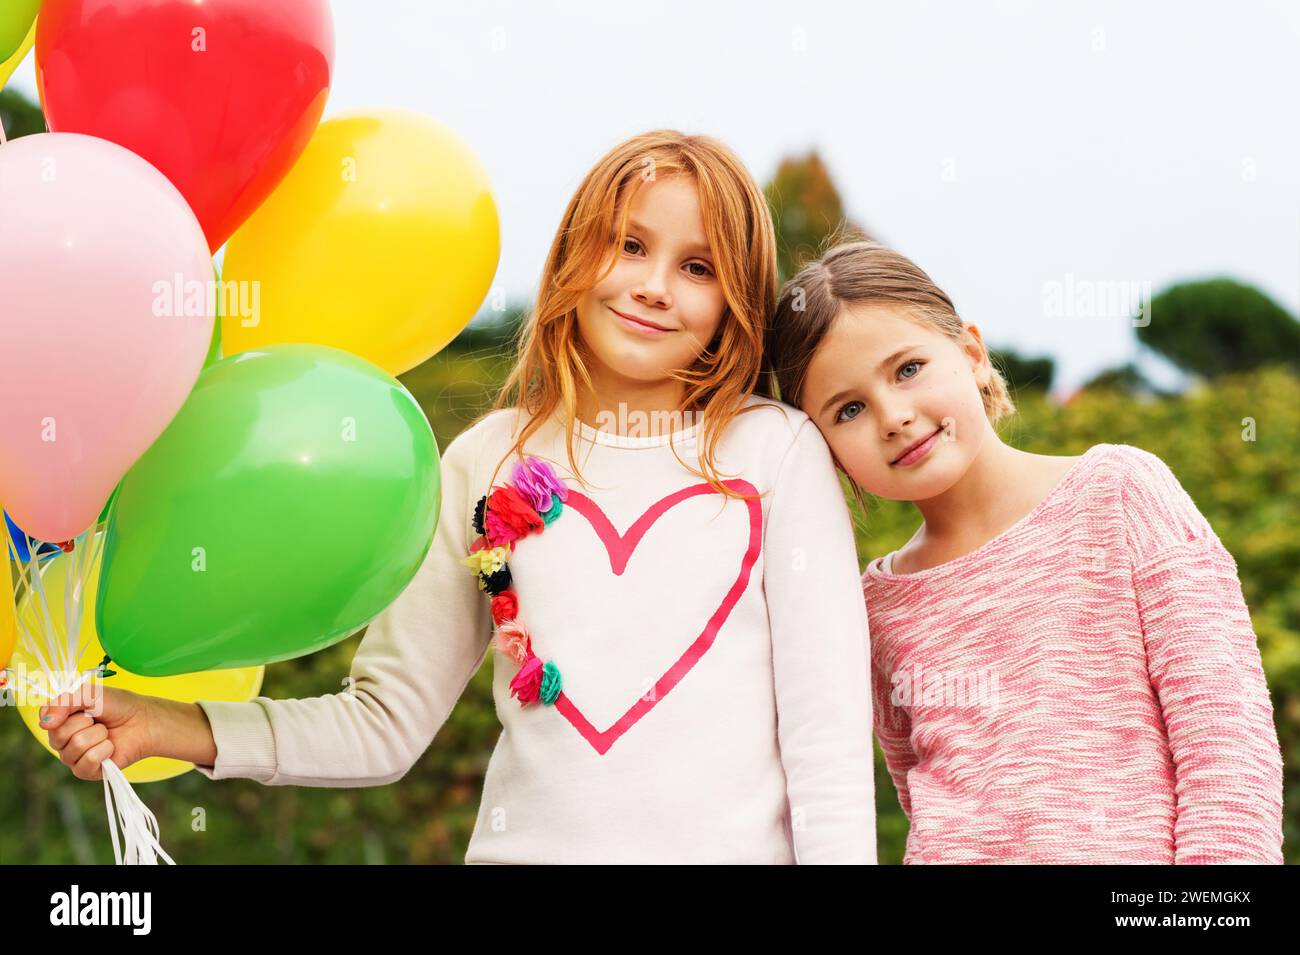 Außenporträt von 2 süßen kleinen Mädchen mit bunten Ballons Stockfoto